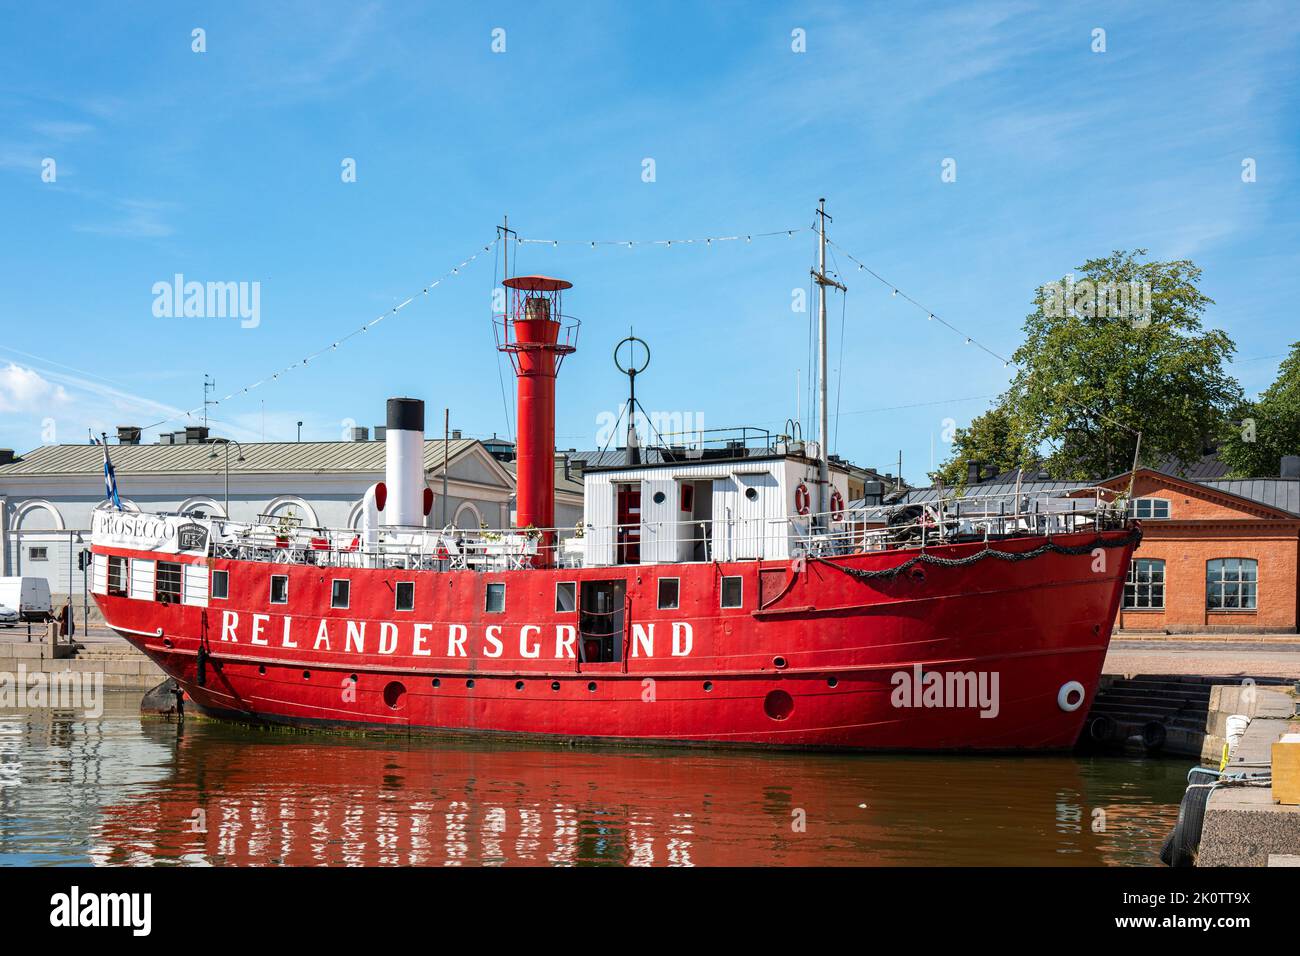 El barco restaurante Relandergrund, antiguamente un barco de luz, amarrado en el distrito Kruununhaka de Helsinki, Finlandia Foto de stock